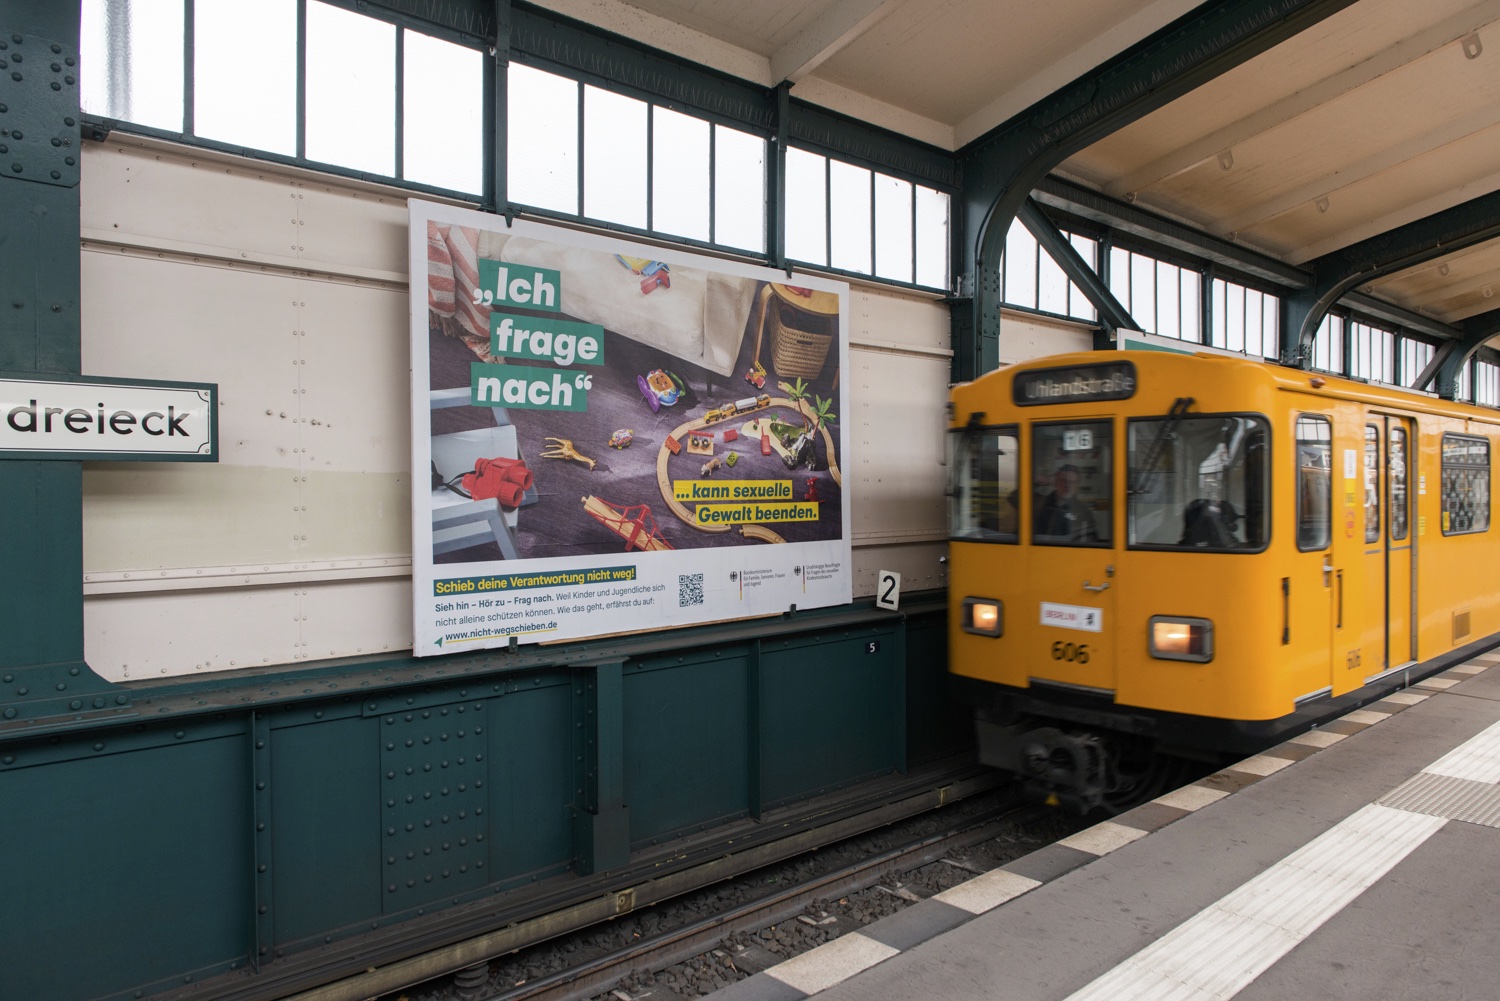 Bahnhaltestelle, zu sehen ist eine U-Bahn und ein Kampagnenmotiv